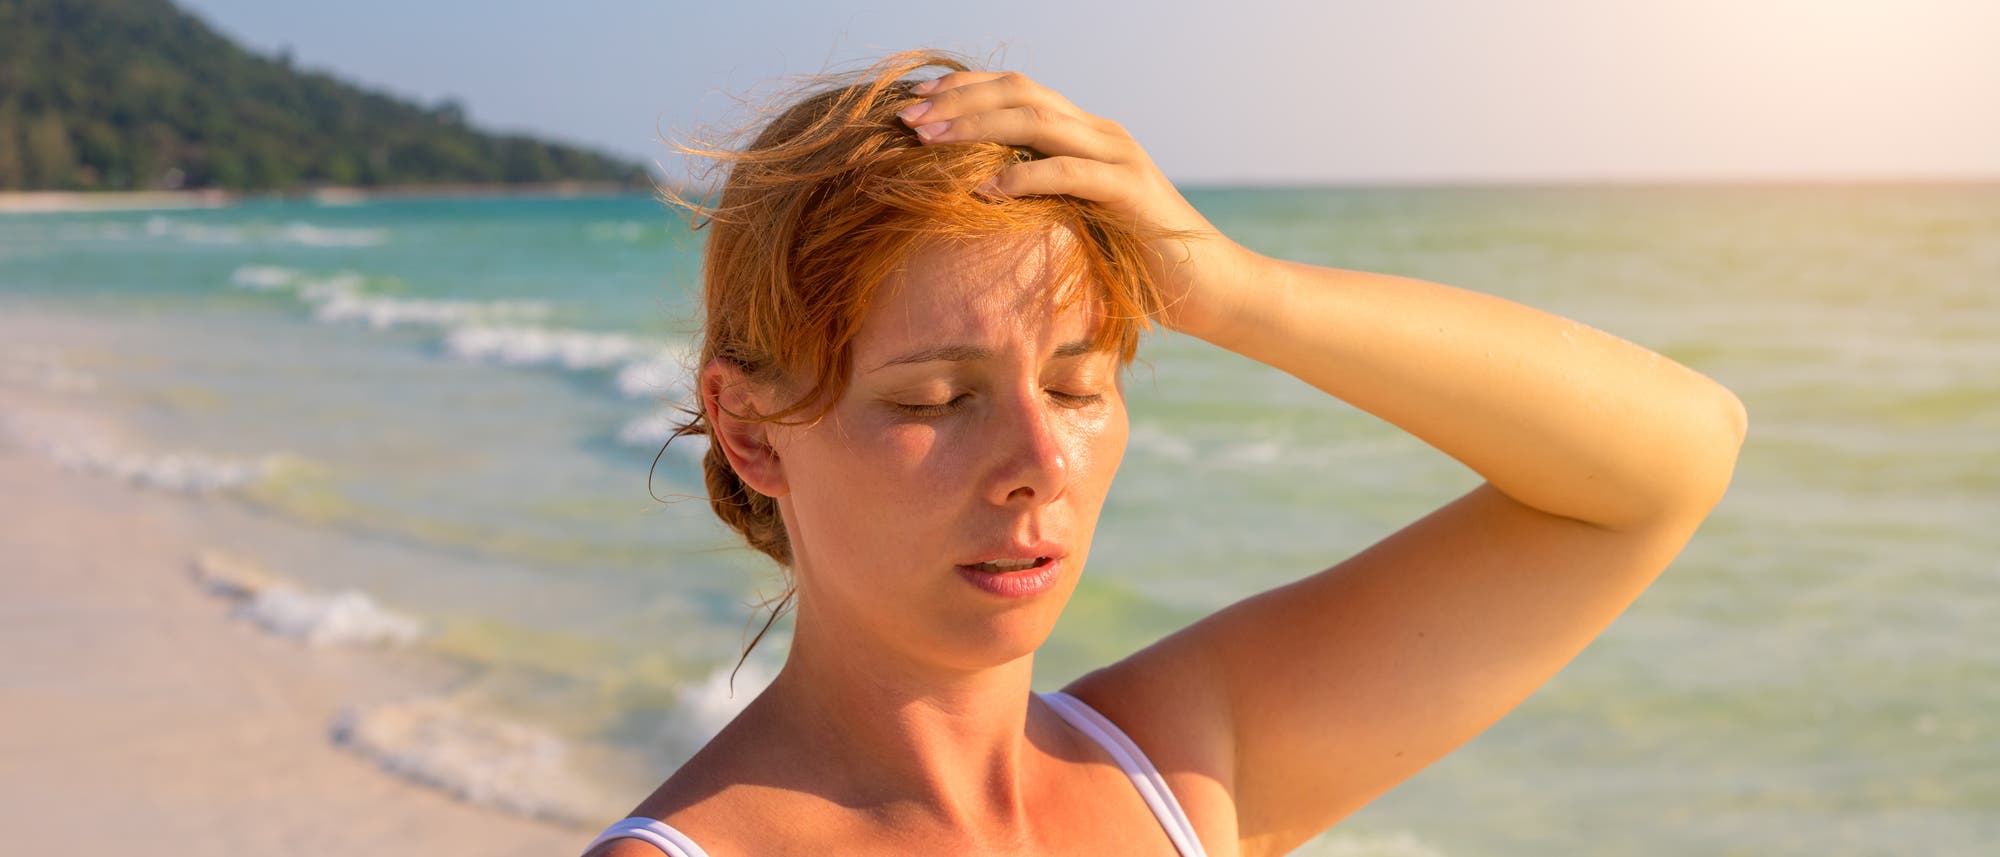 Frau steht an einem Strand in der Sonne, sieht erschöpft aus und fasst sich an den Kopf. 